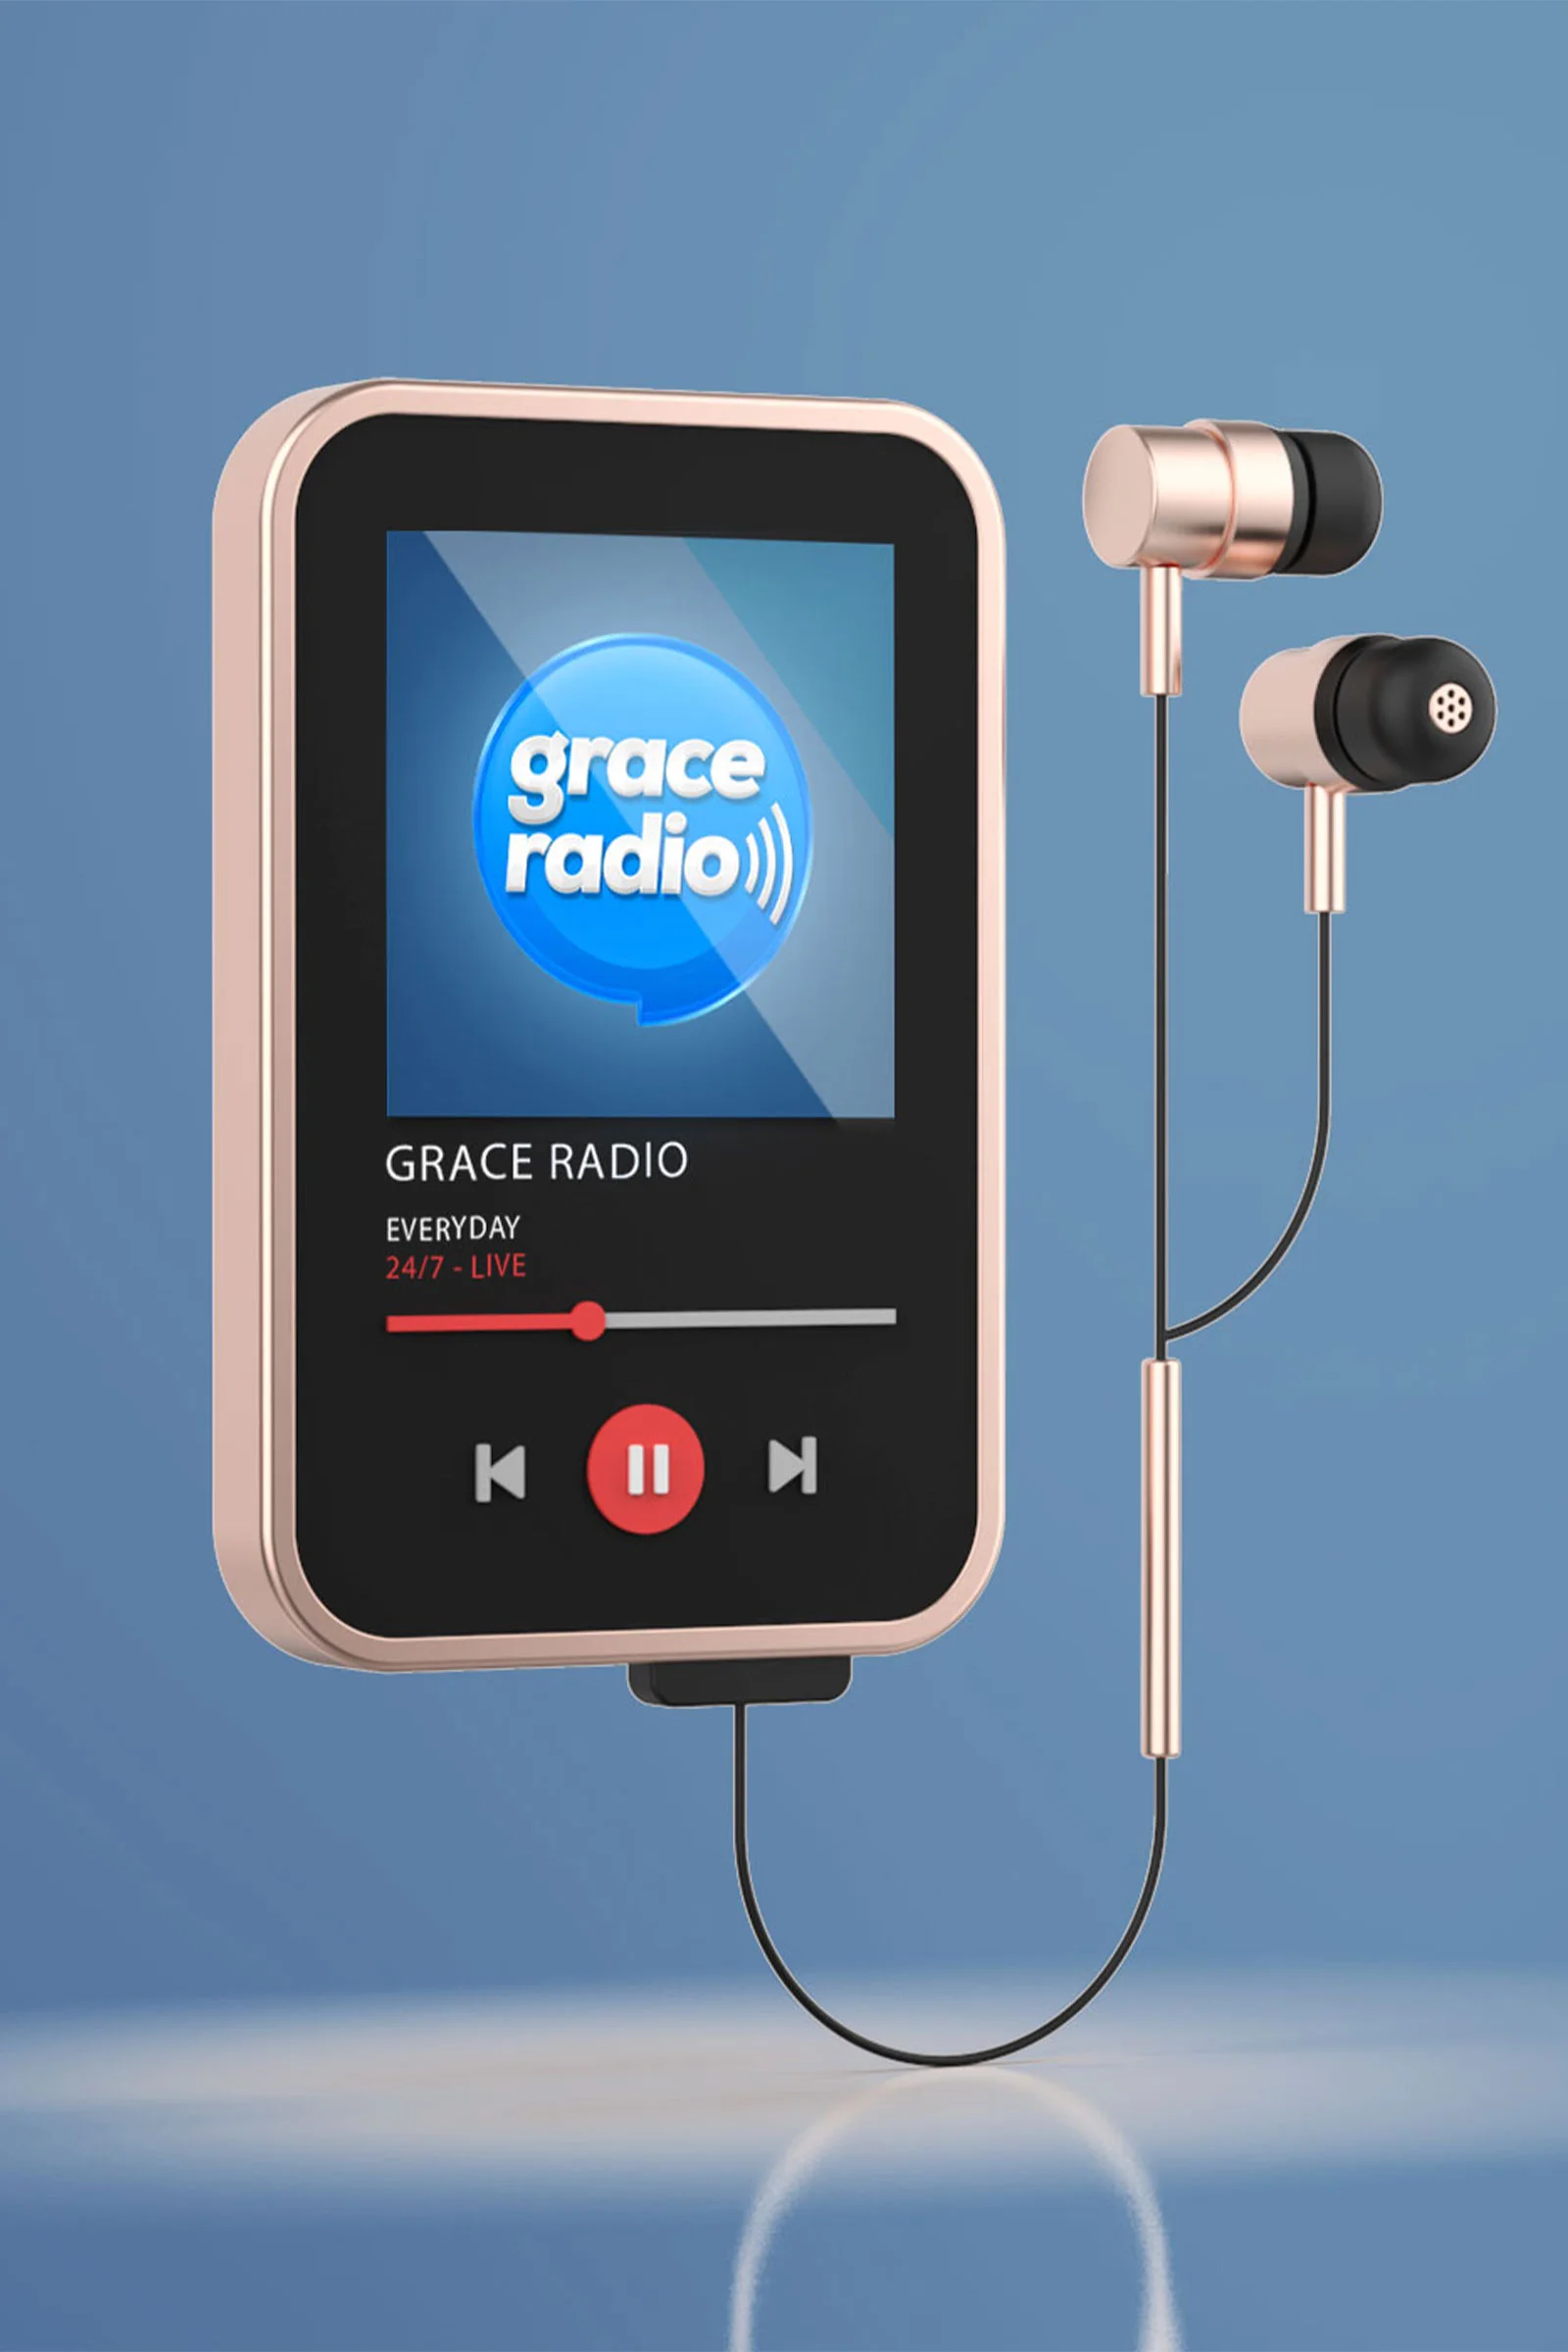 grace radio live